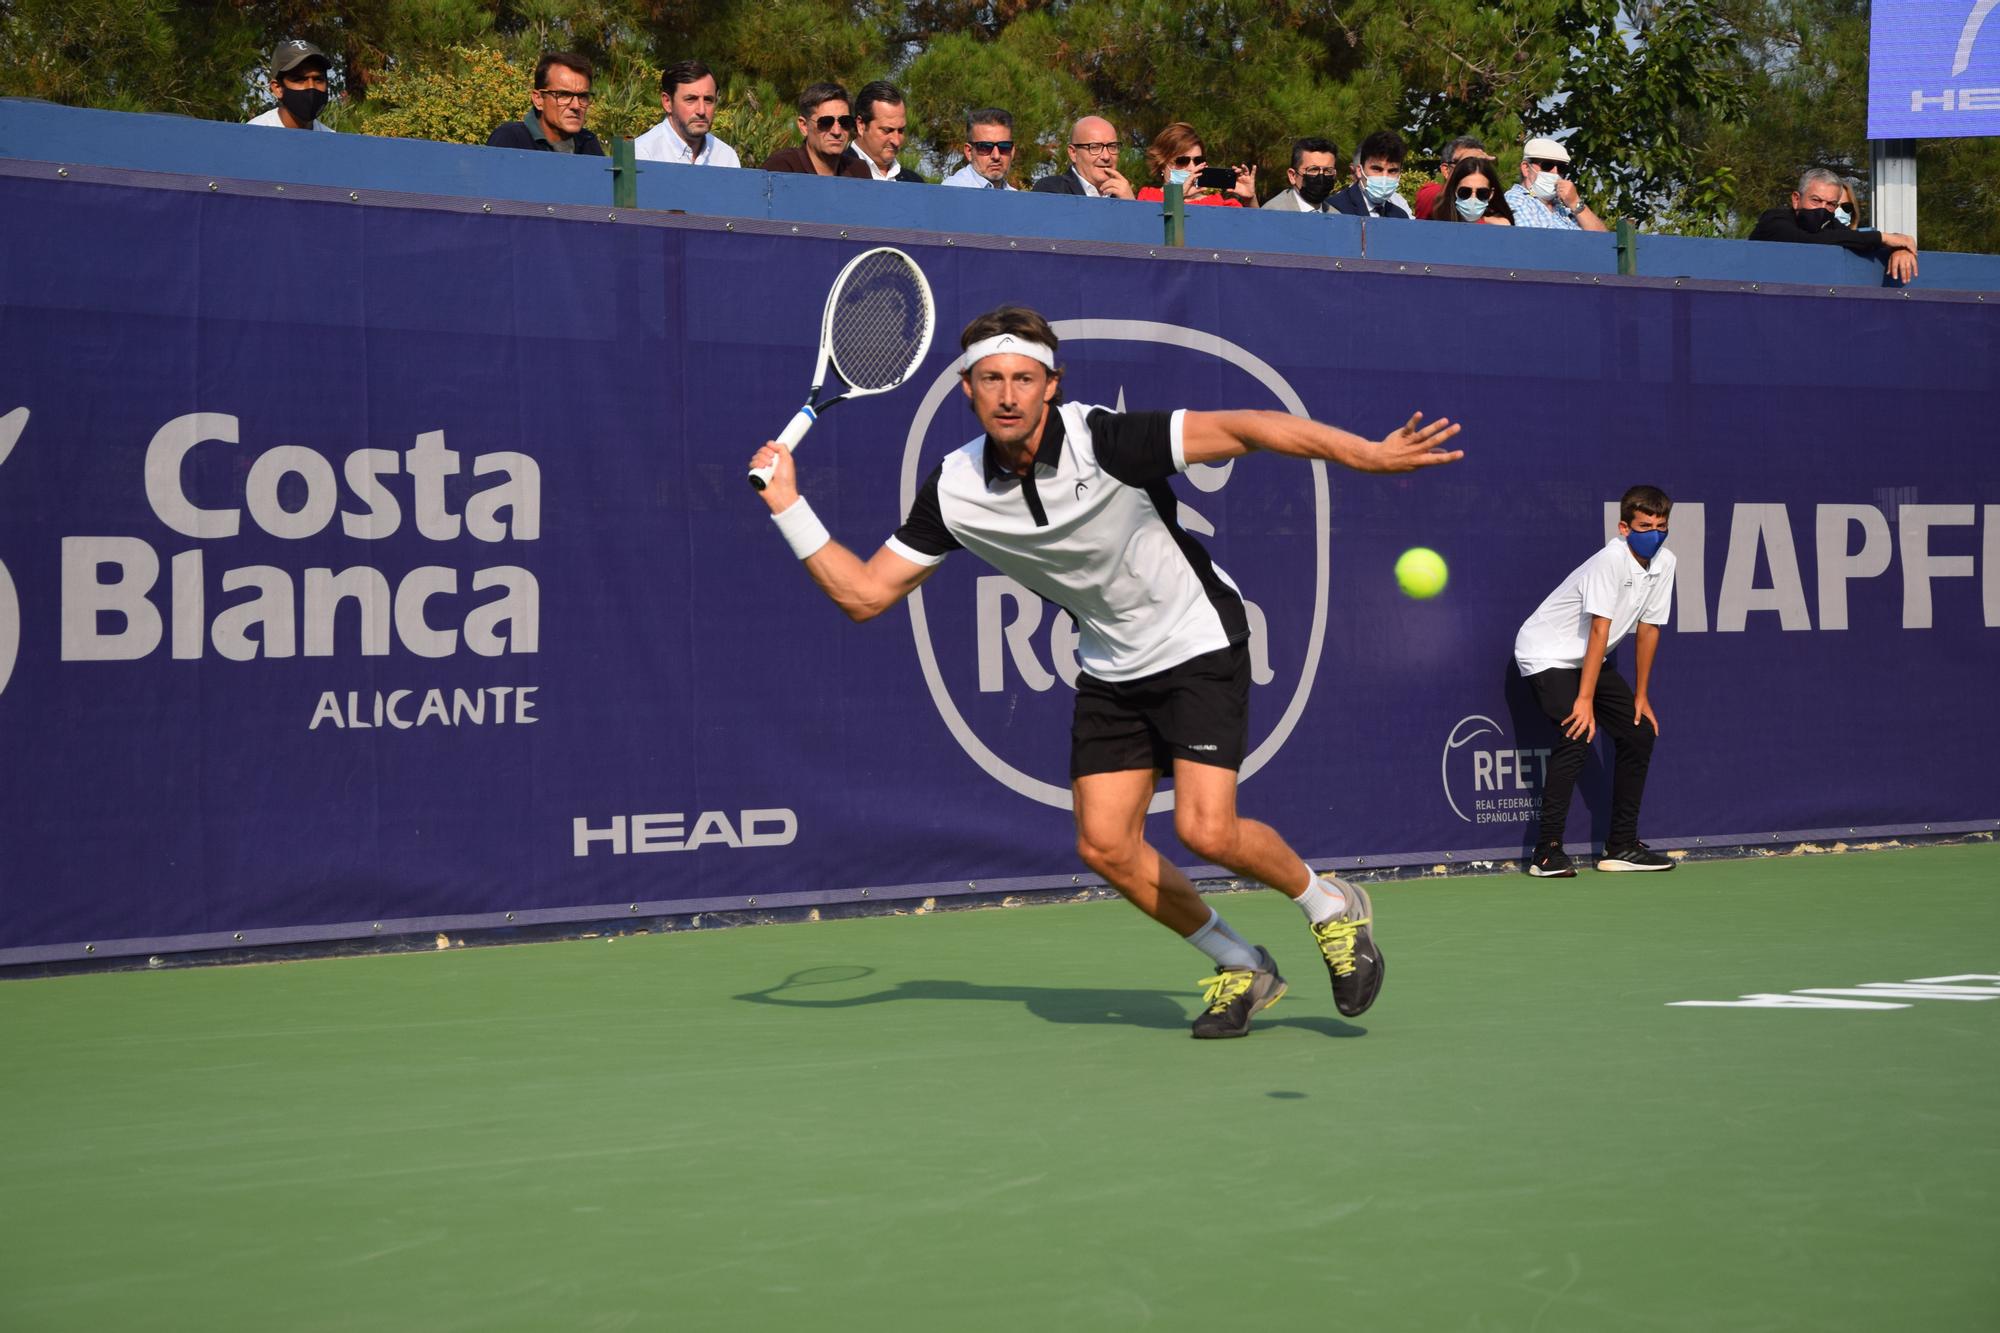 El increíble estado de forma de Juan Carlos Ferrero a los 41 años